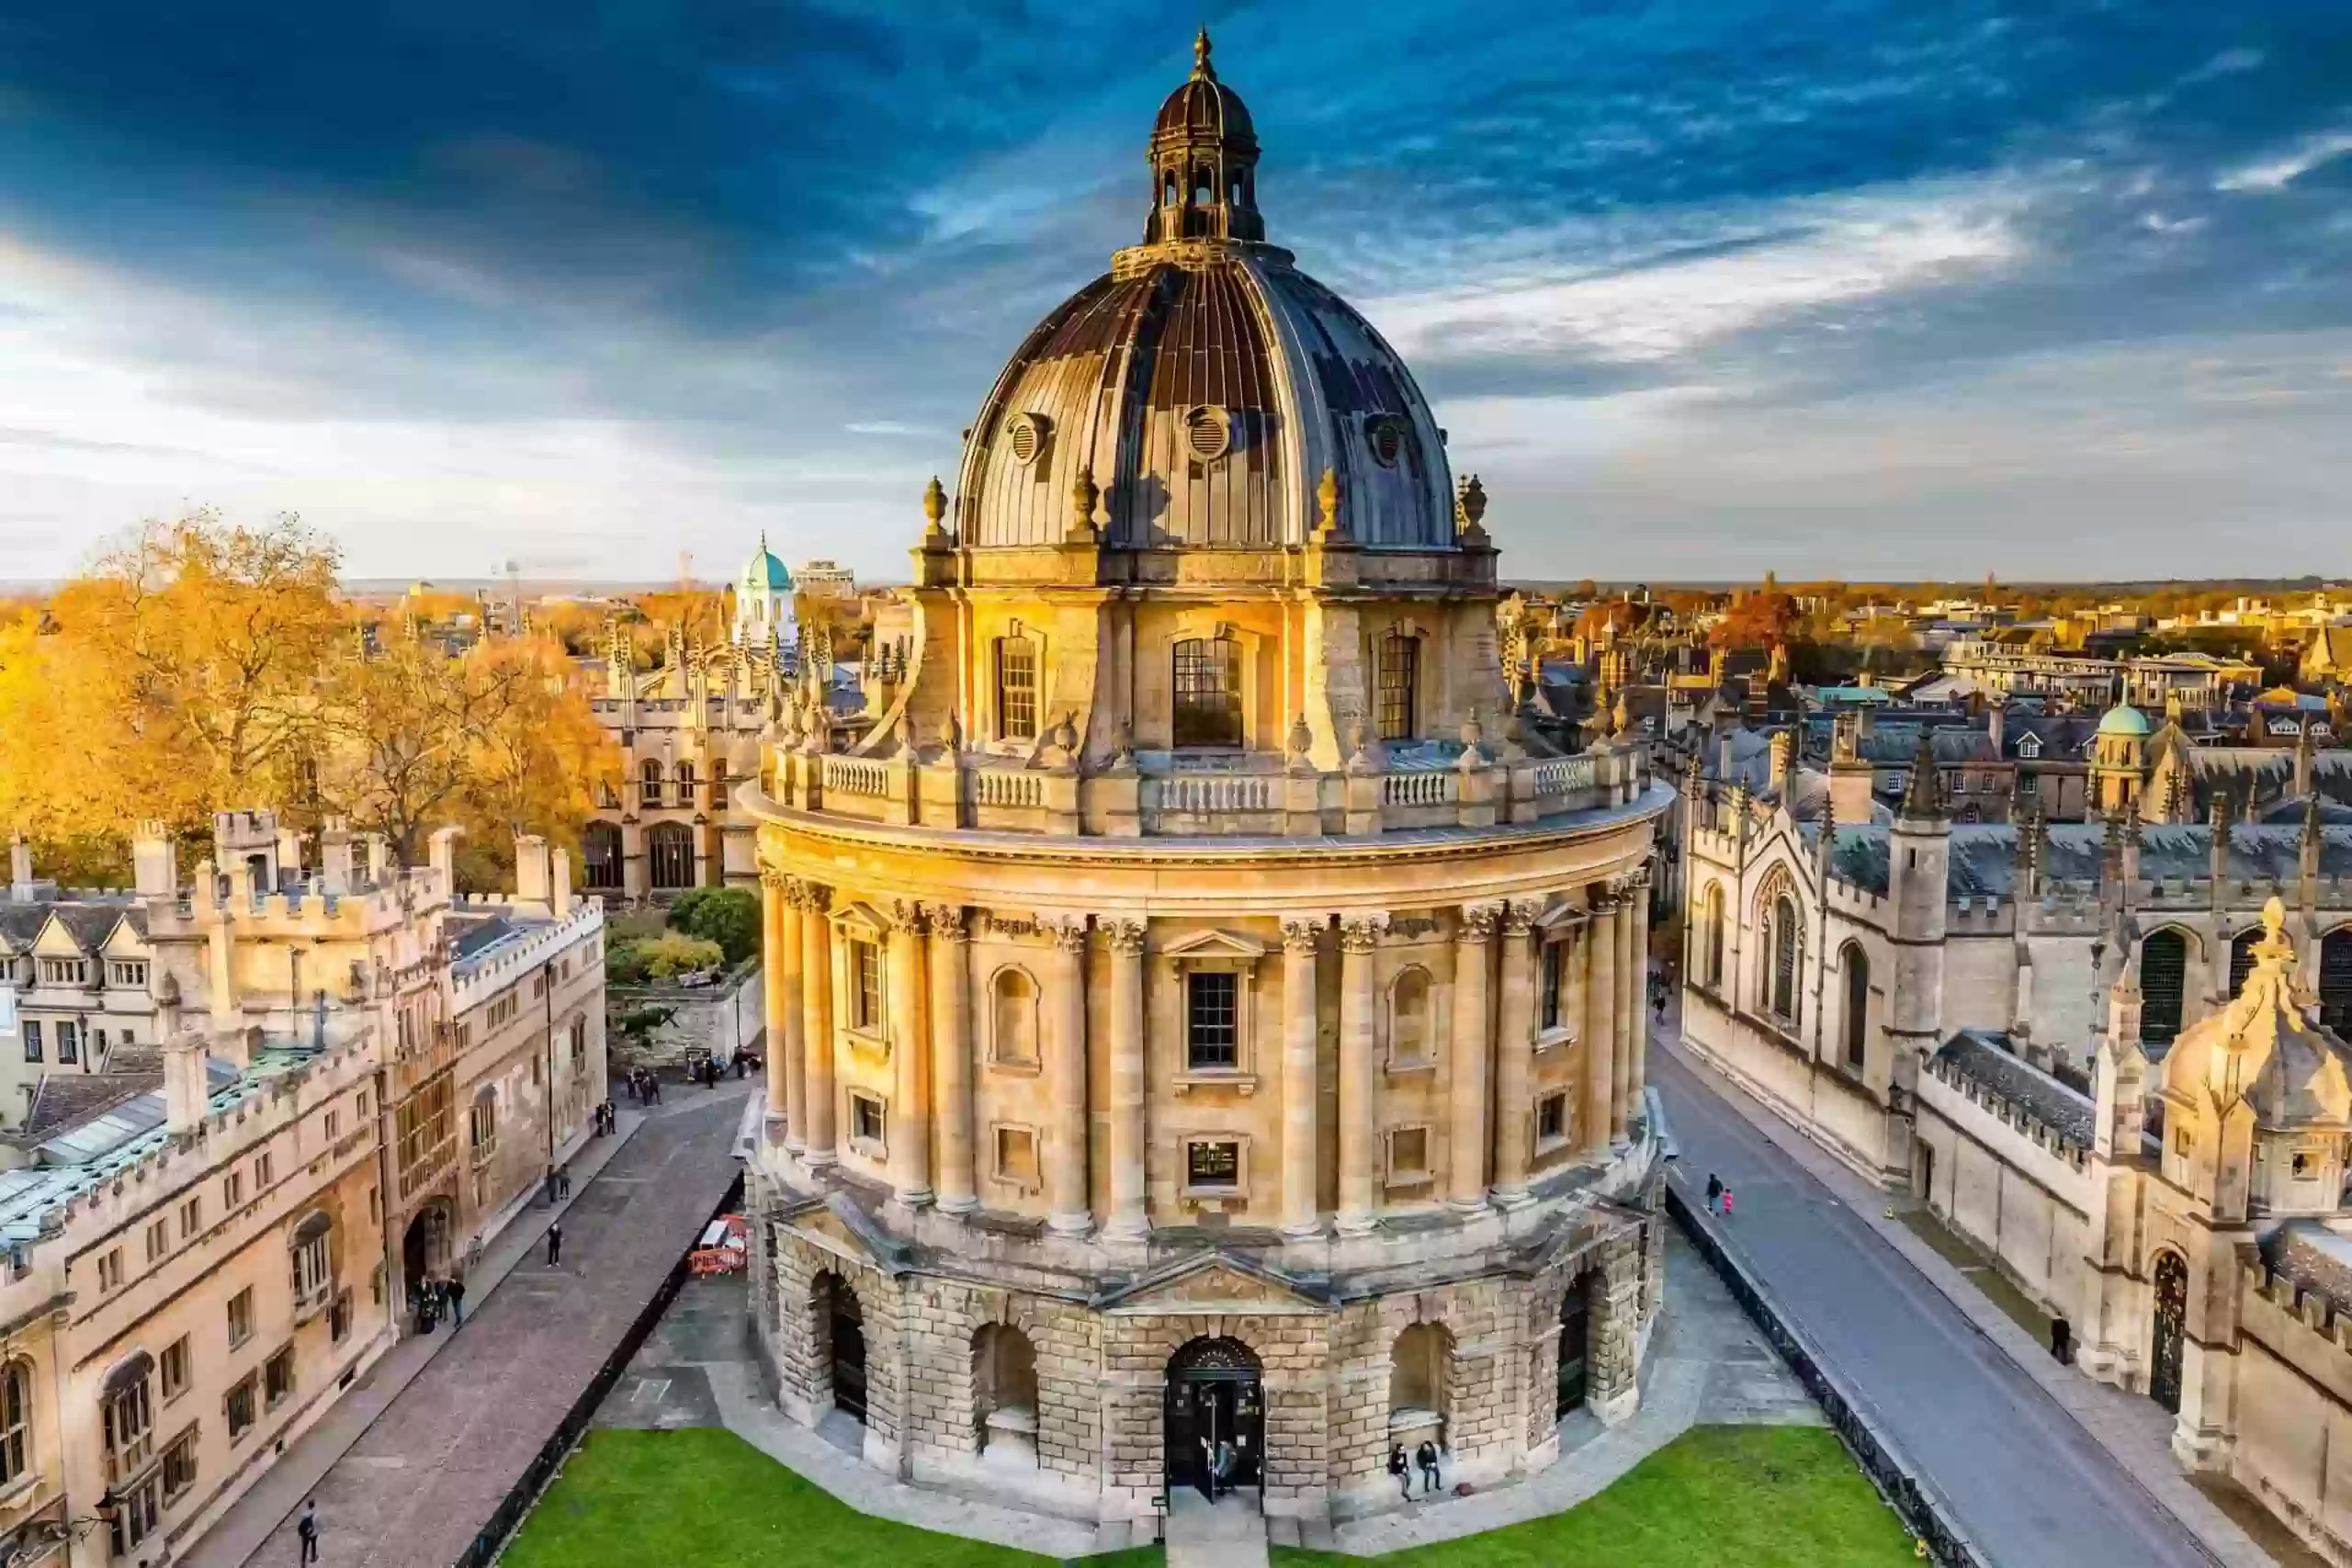 Đại học Oxford danh tiếng. Ảnh: propertybooking